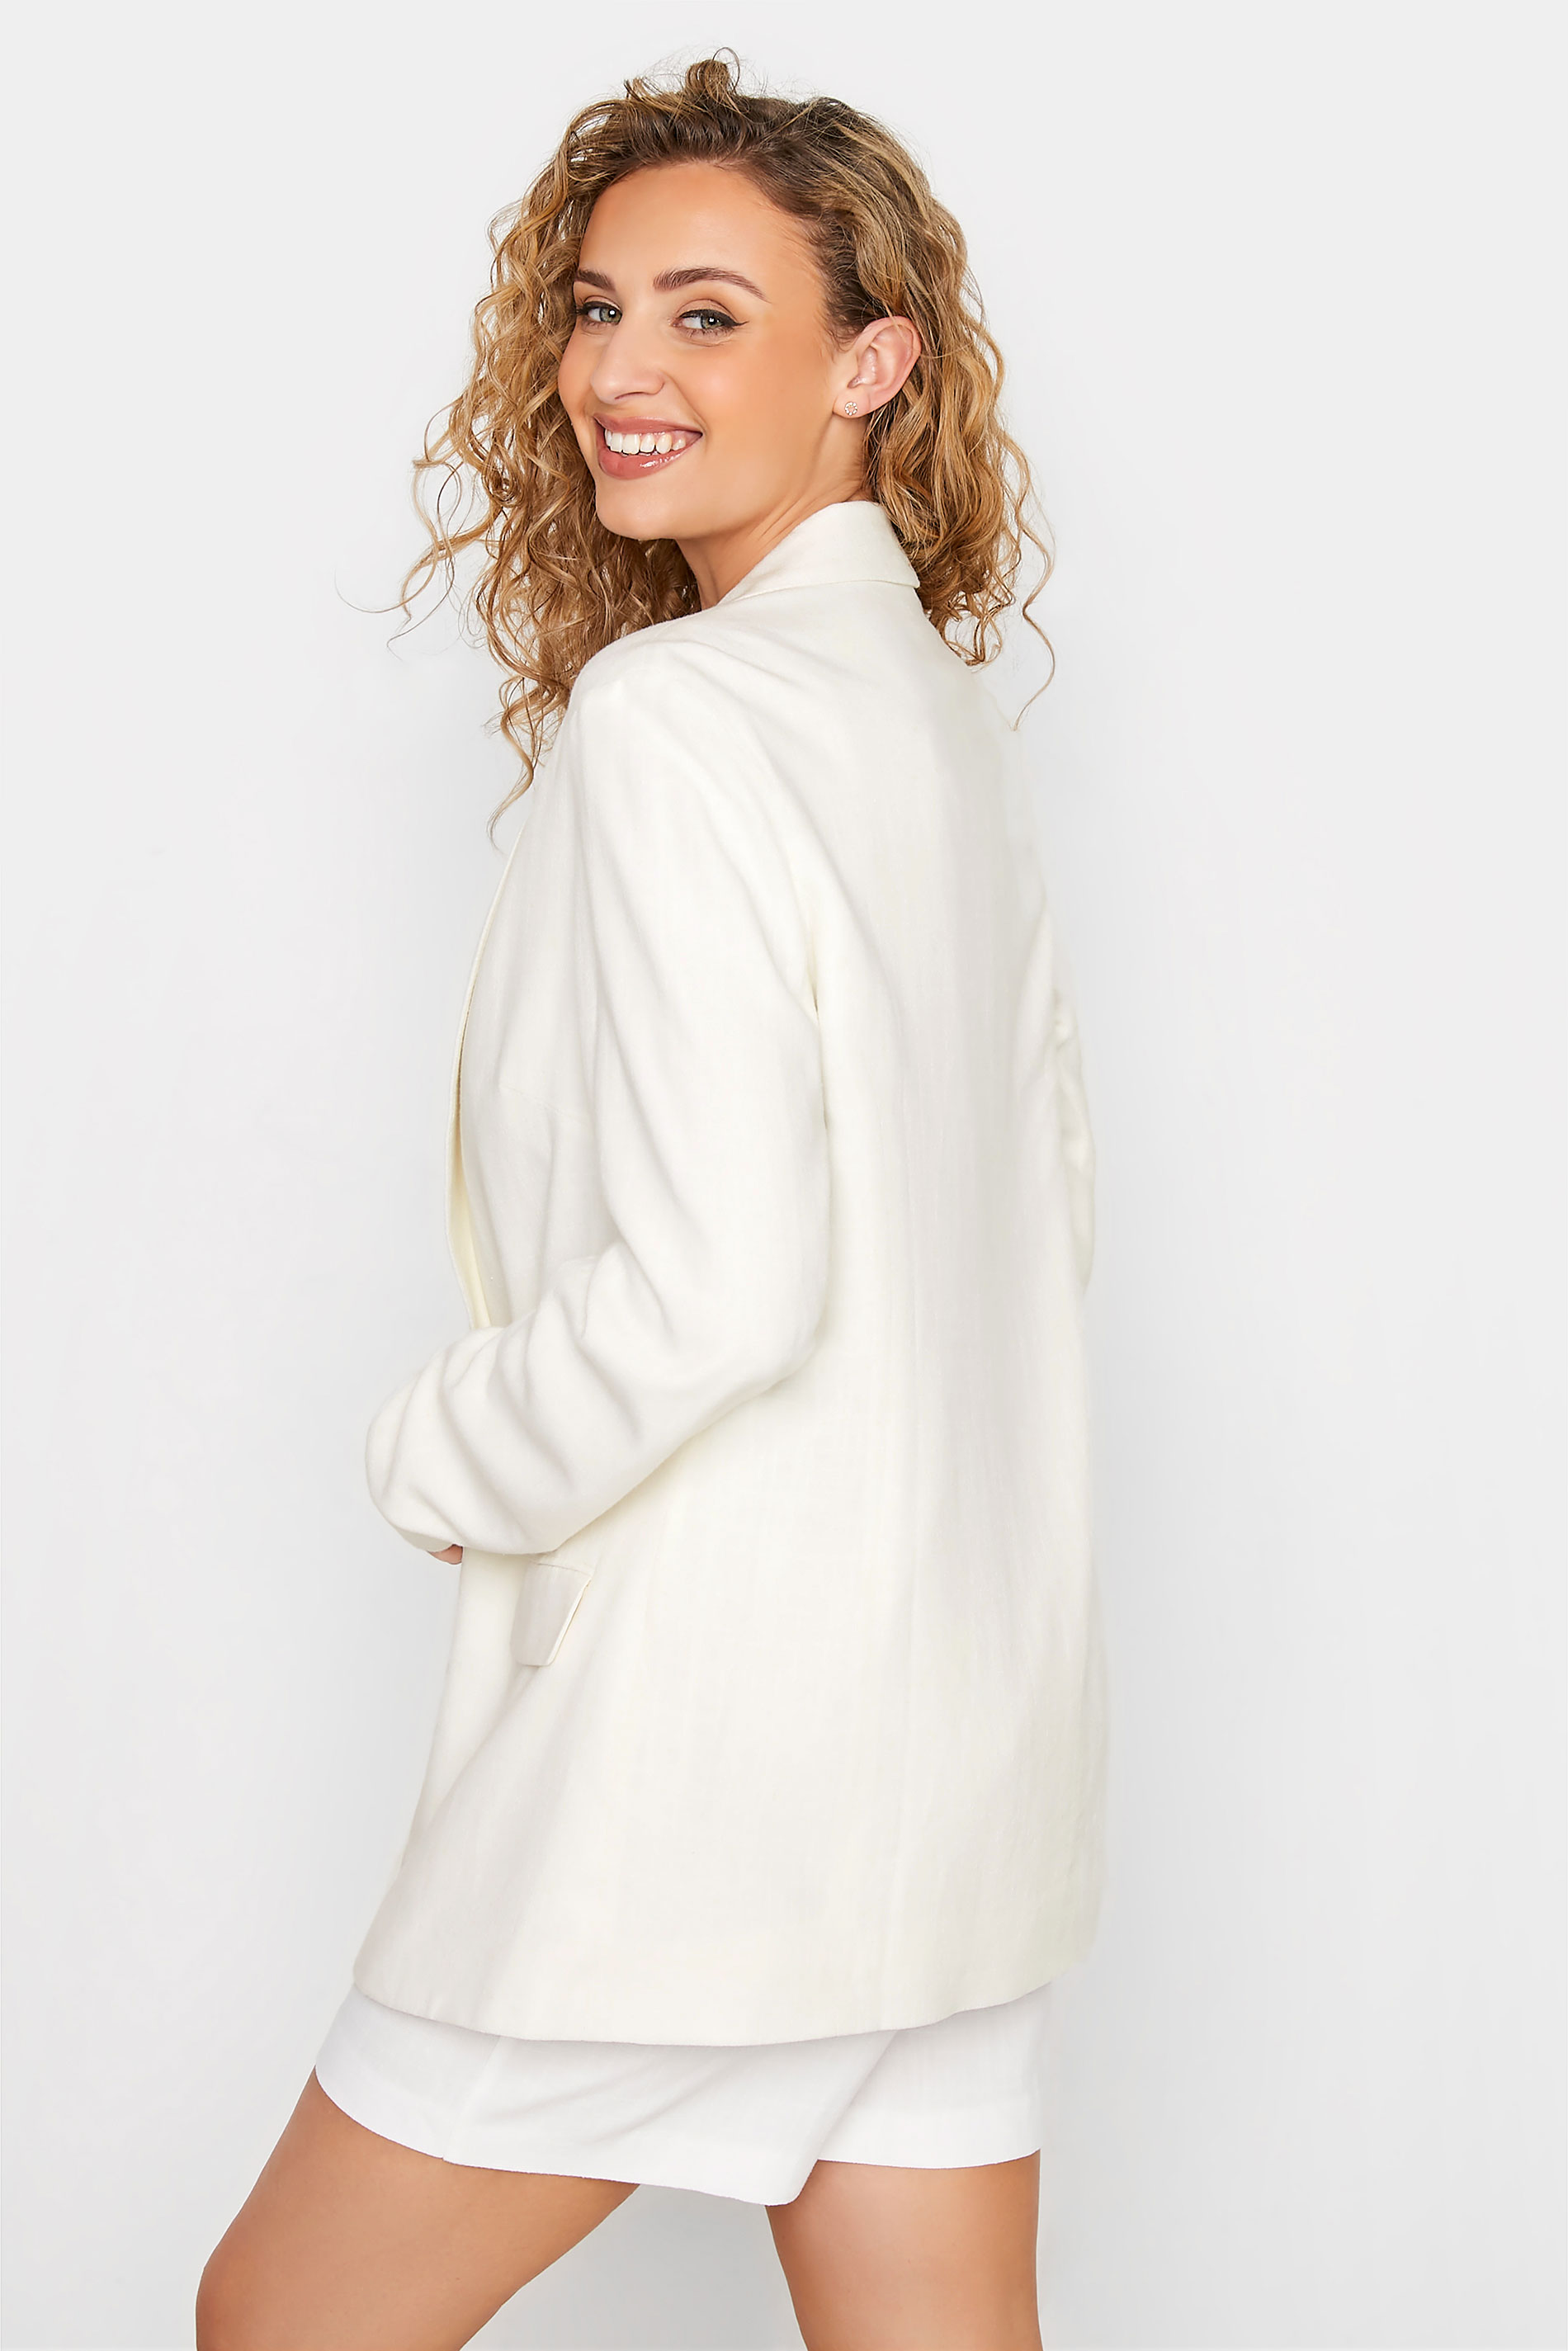 LTS Tall Women's White Linen Look Blazer | Long Tall Sally  3